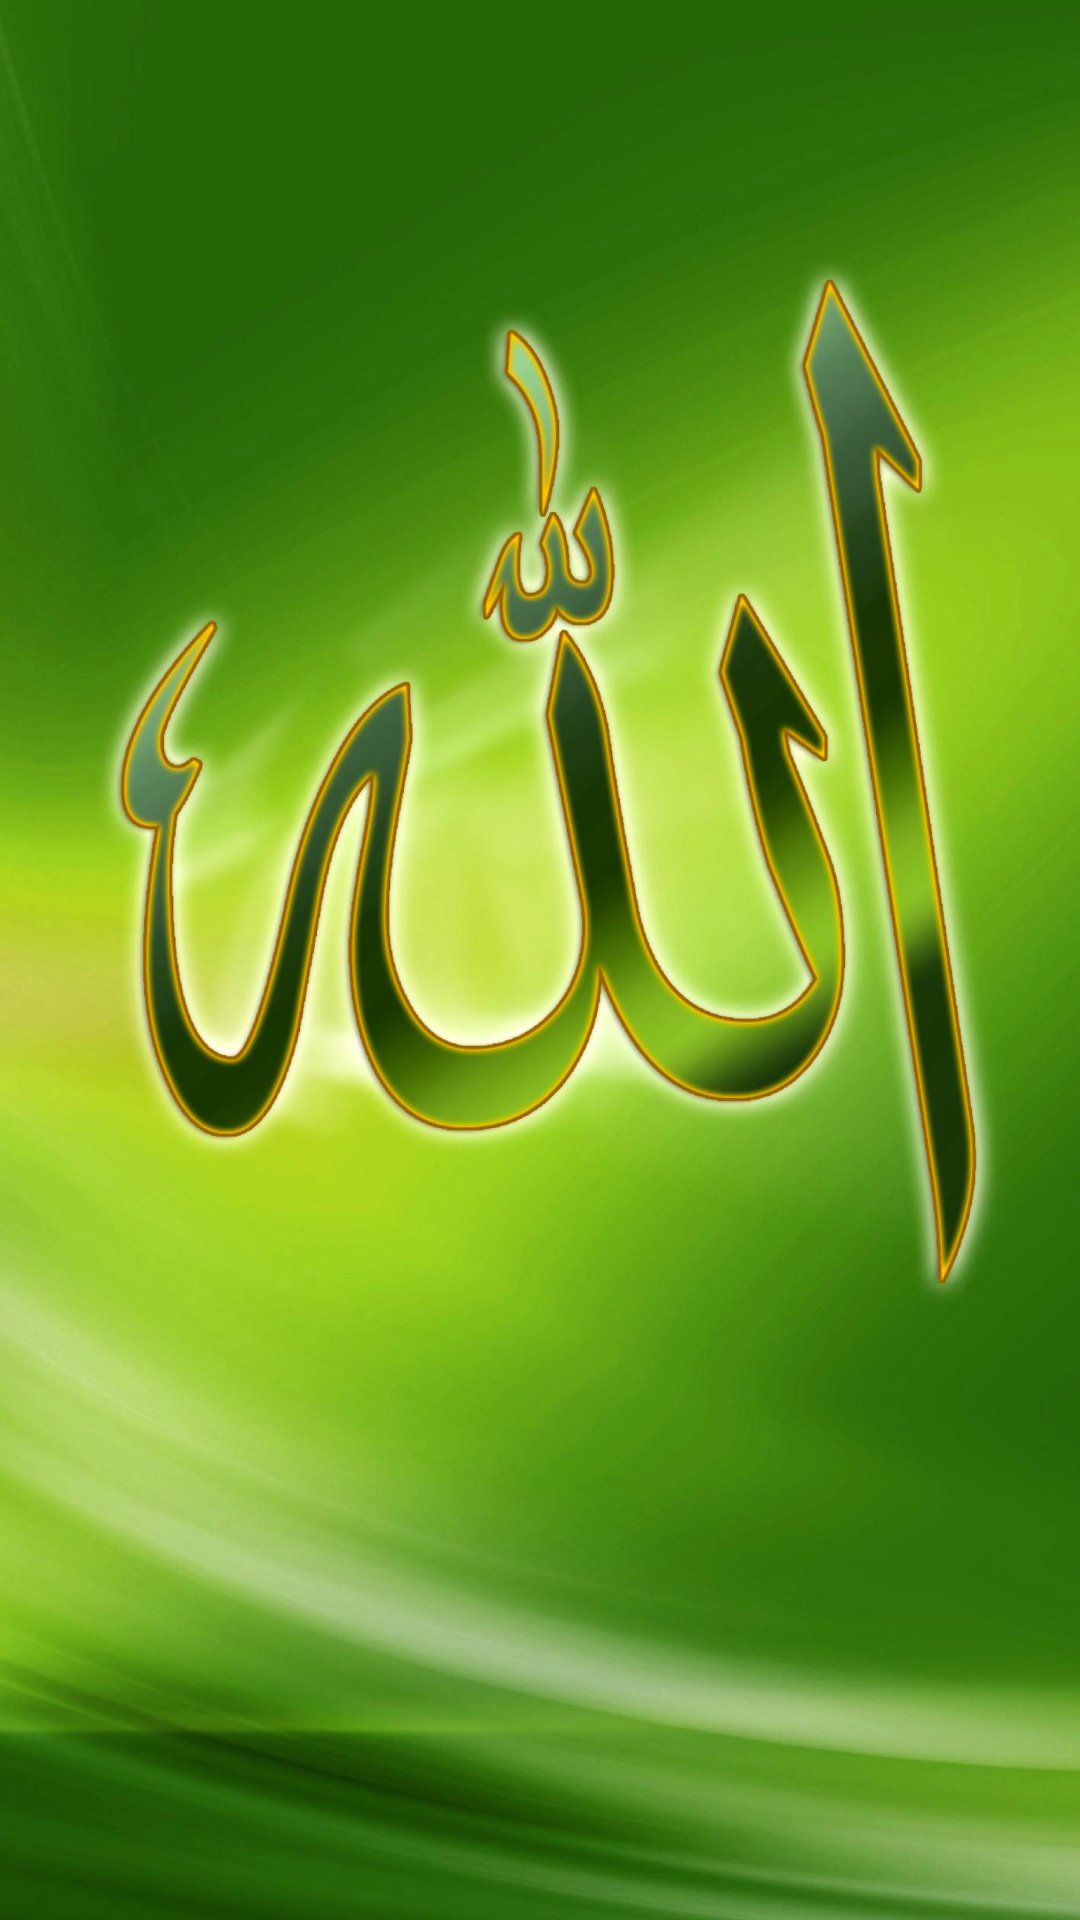 Allah, Islam wallpaper 1080x1920